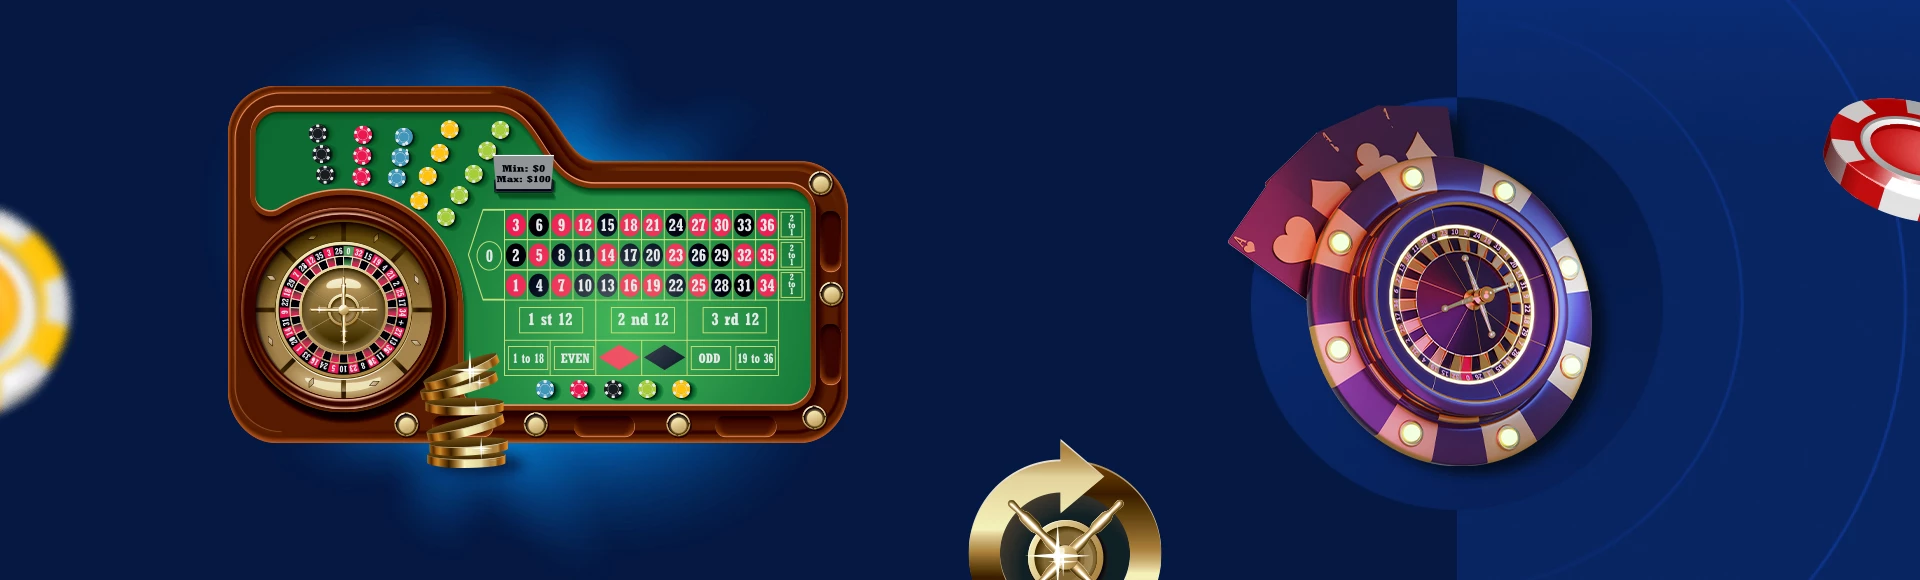 Roulette gids door CasinoGenie design image